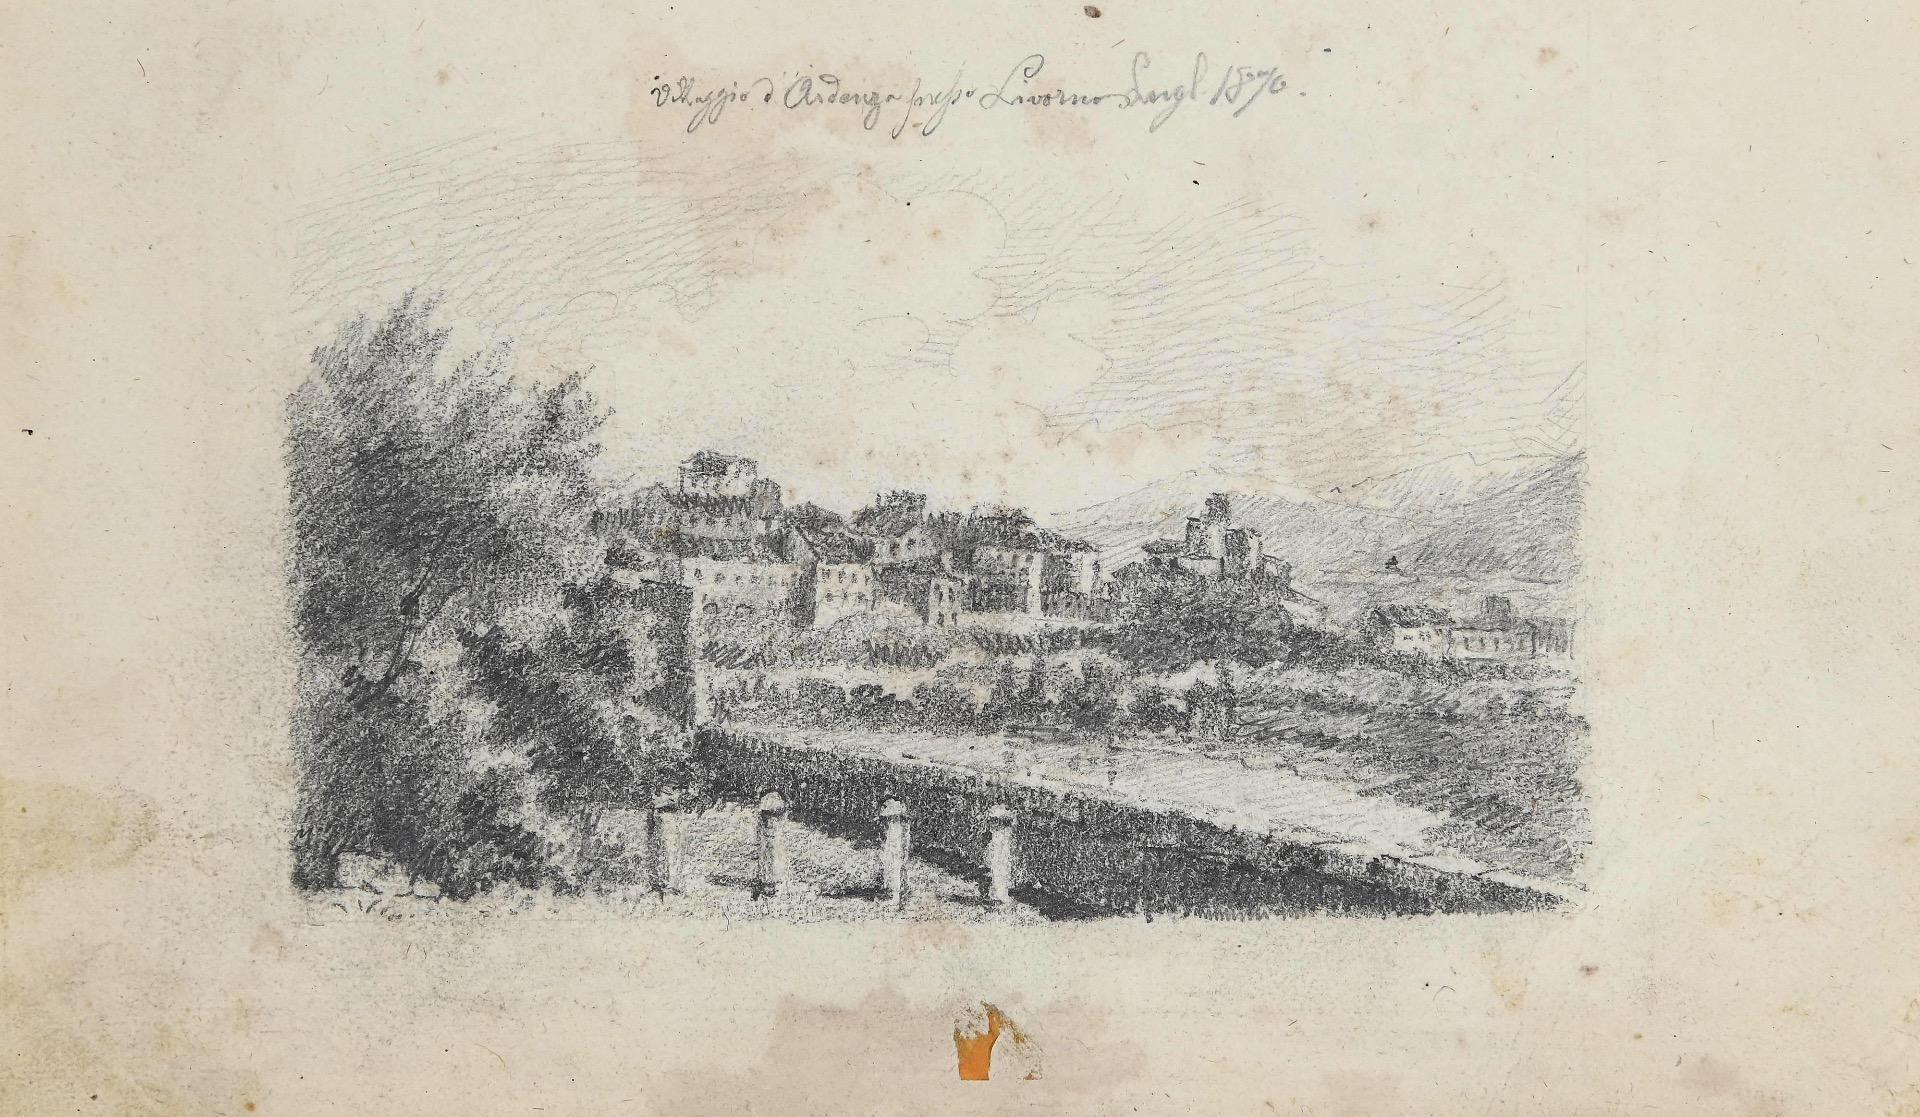 Unknown Landscape Art - The Cityscape of Ardenza, Livorno - Original Pencil Drawing - 1870